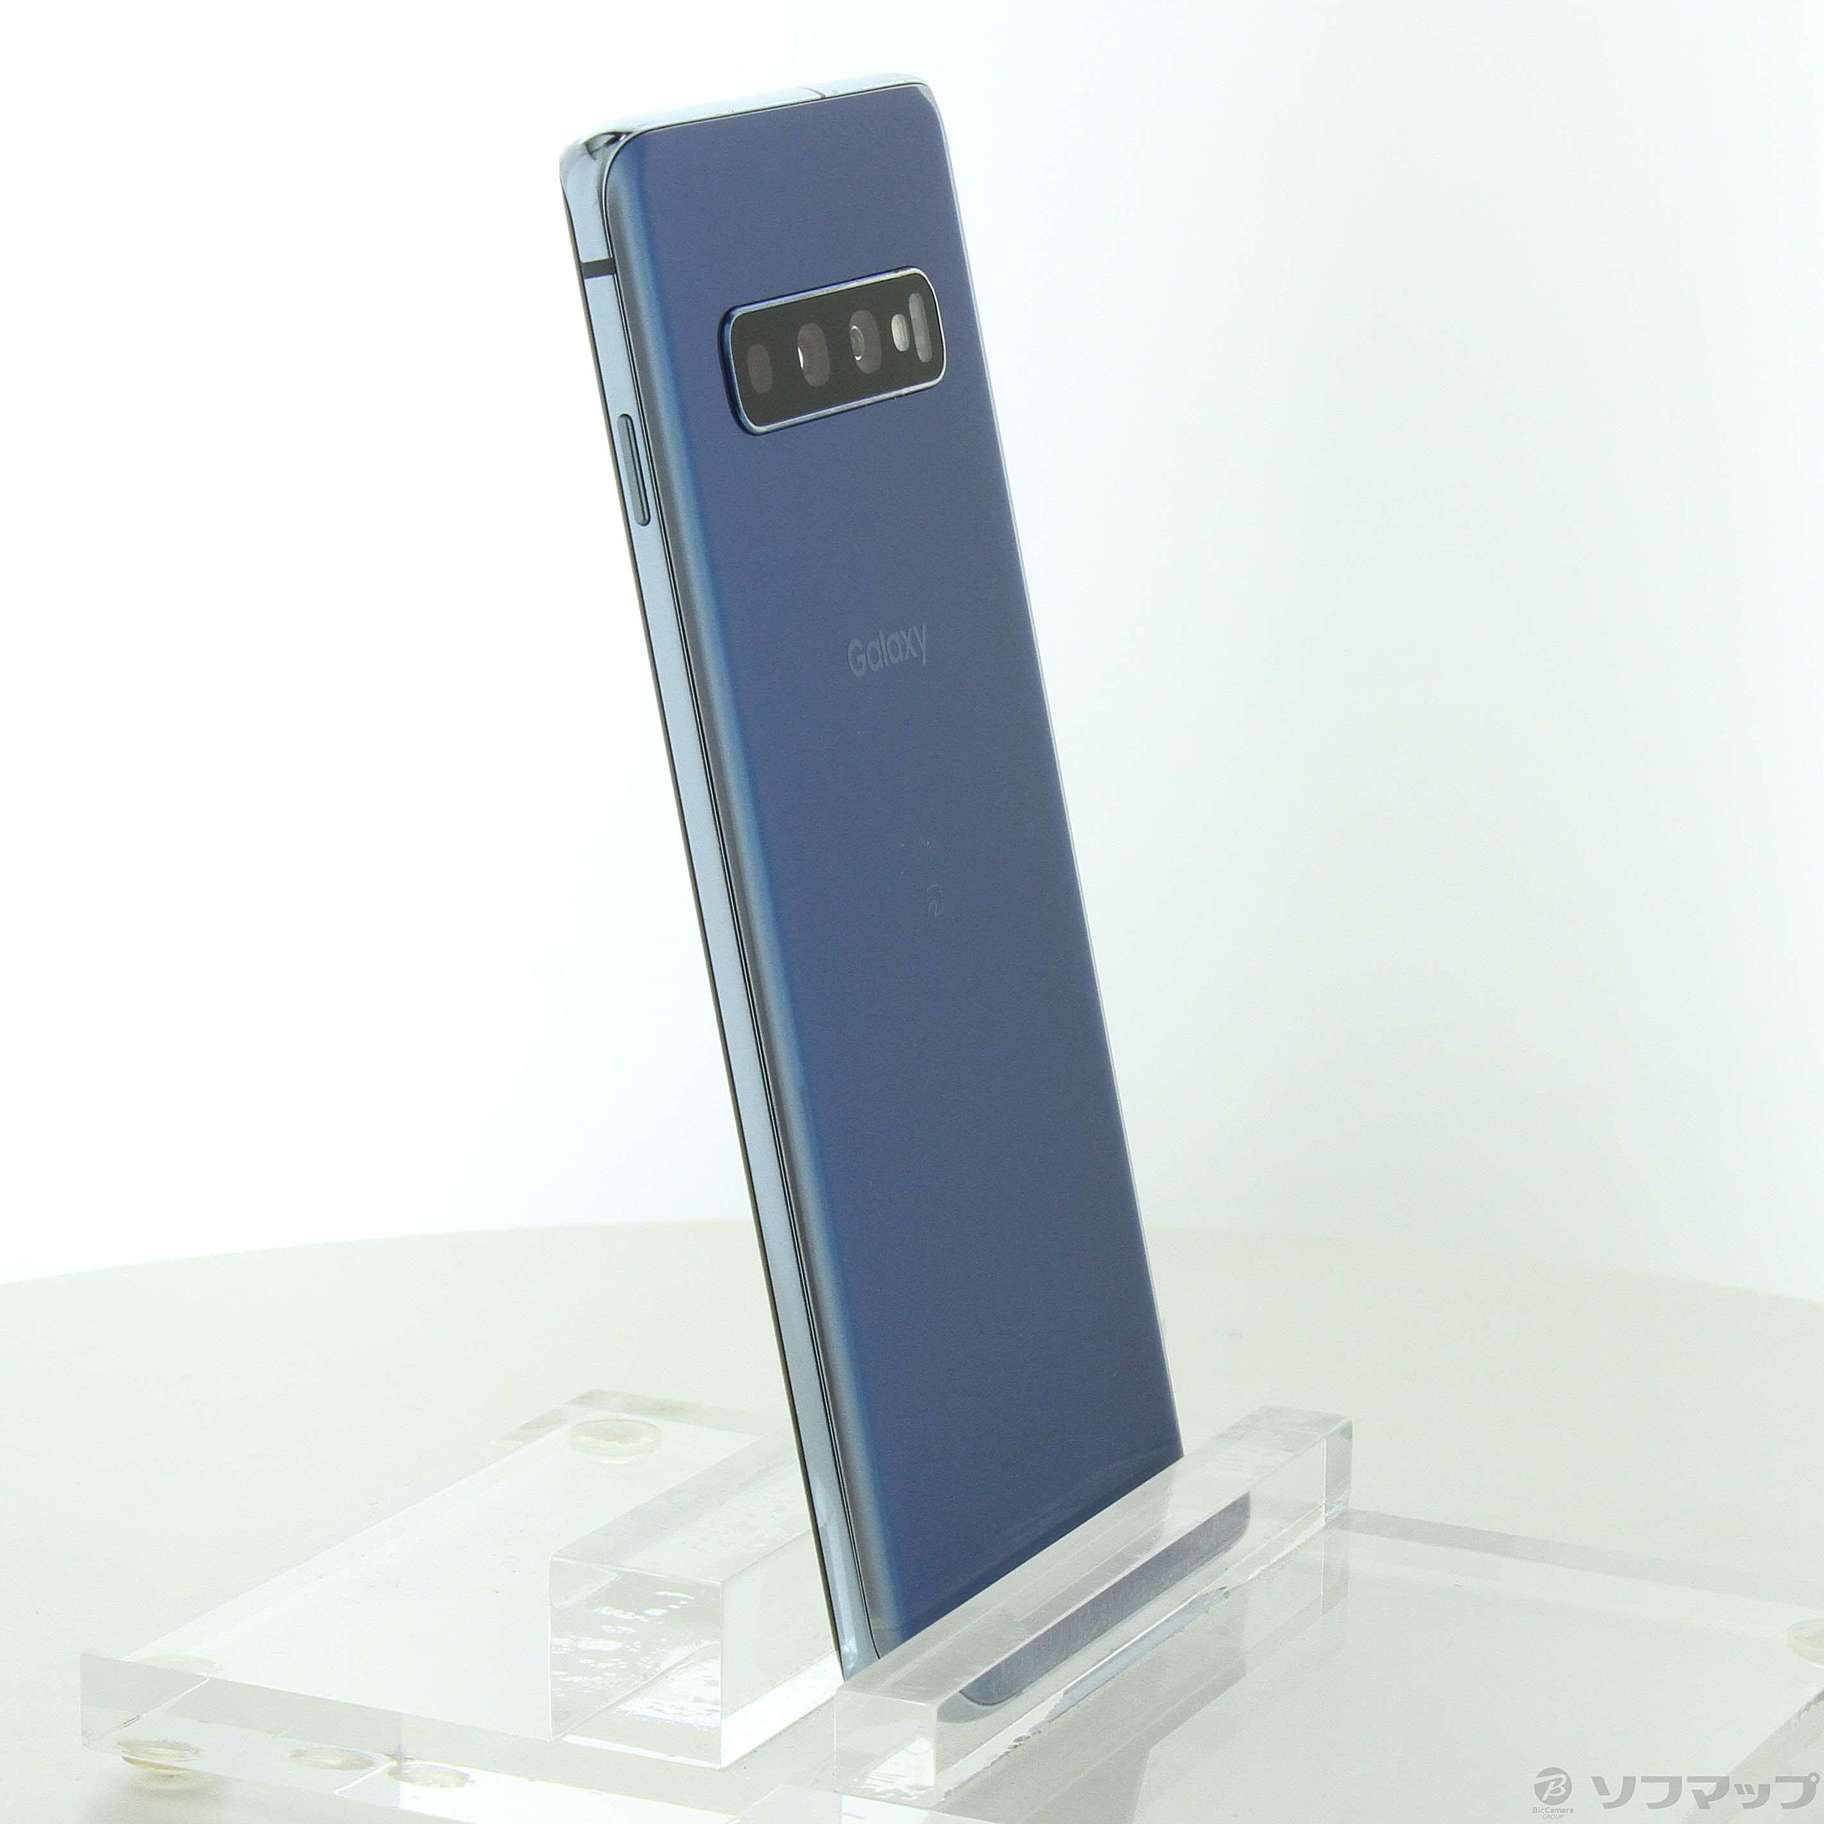 インテル株式会社 SCV41 Samsung galaxy au S10 ブルー SIMフリー